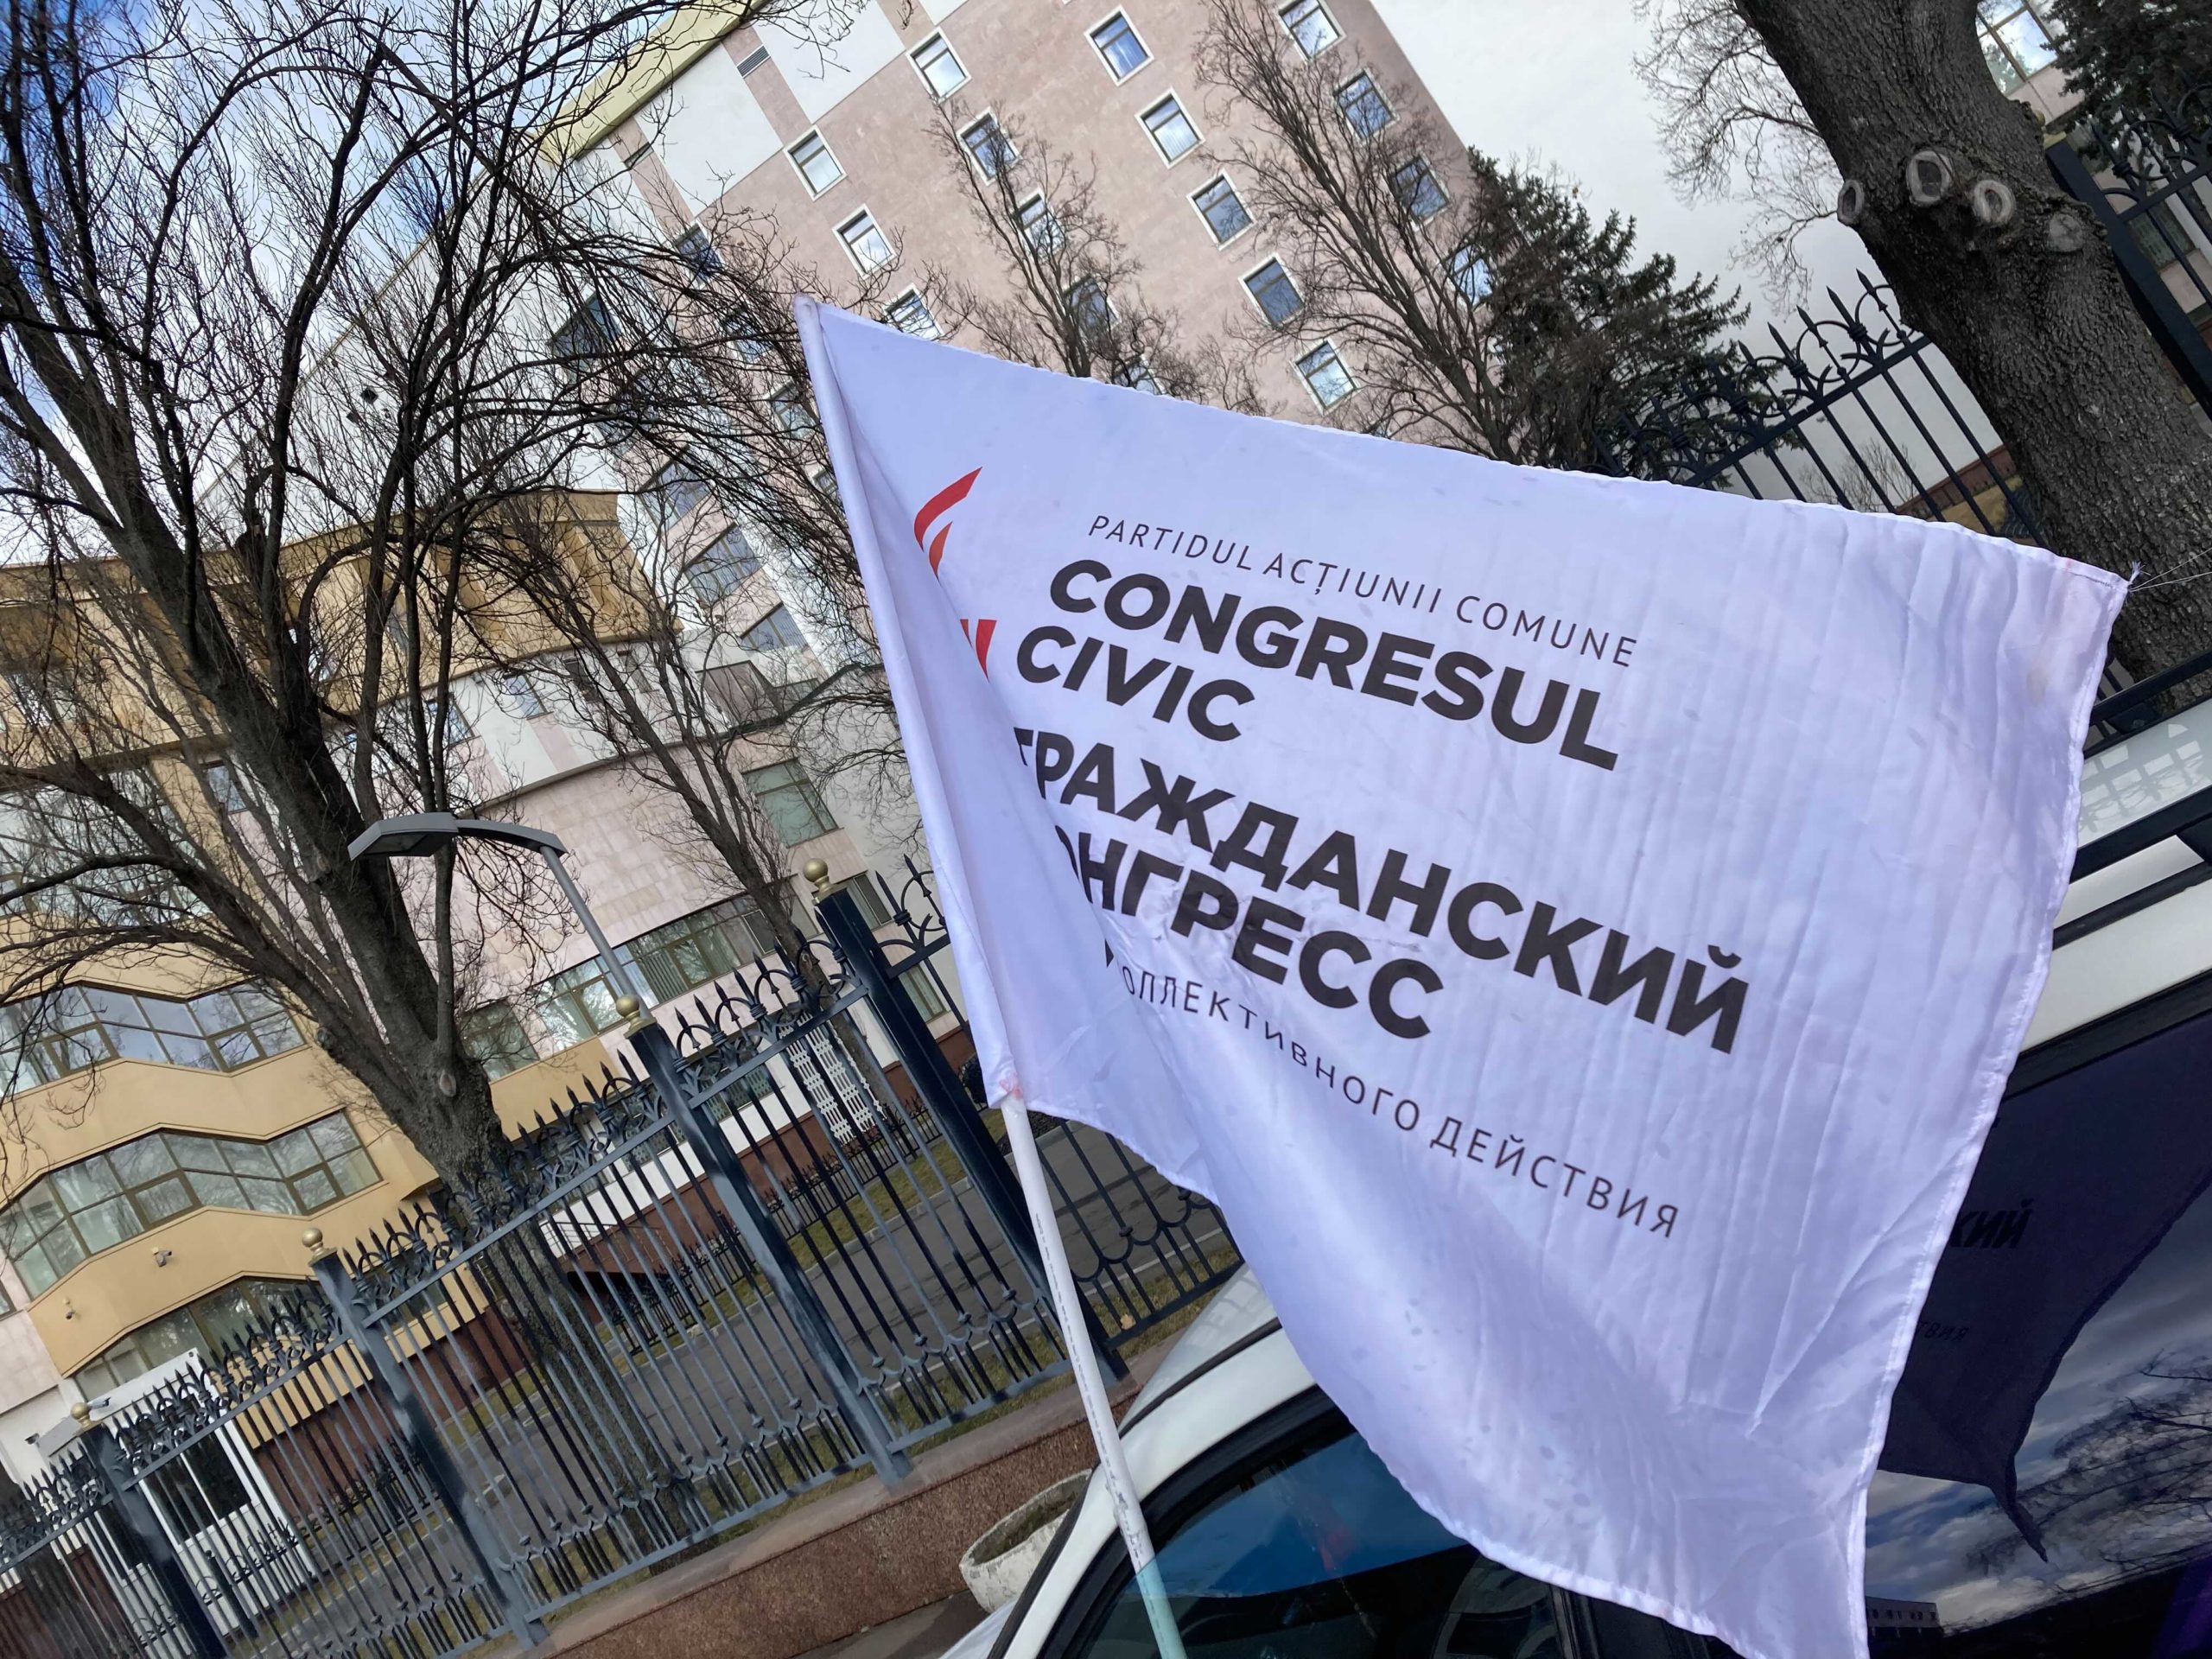 (ВИДЕО) В центре Кишинева водители устроили протест против роста цен на топливо